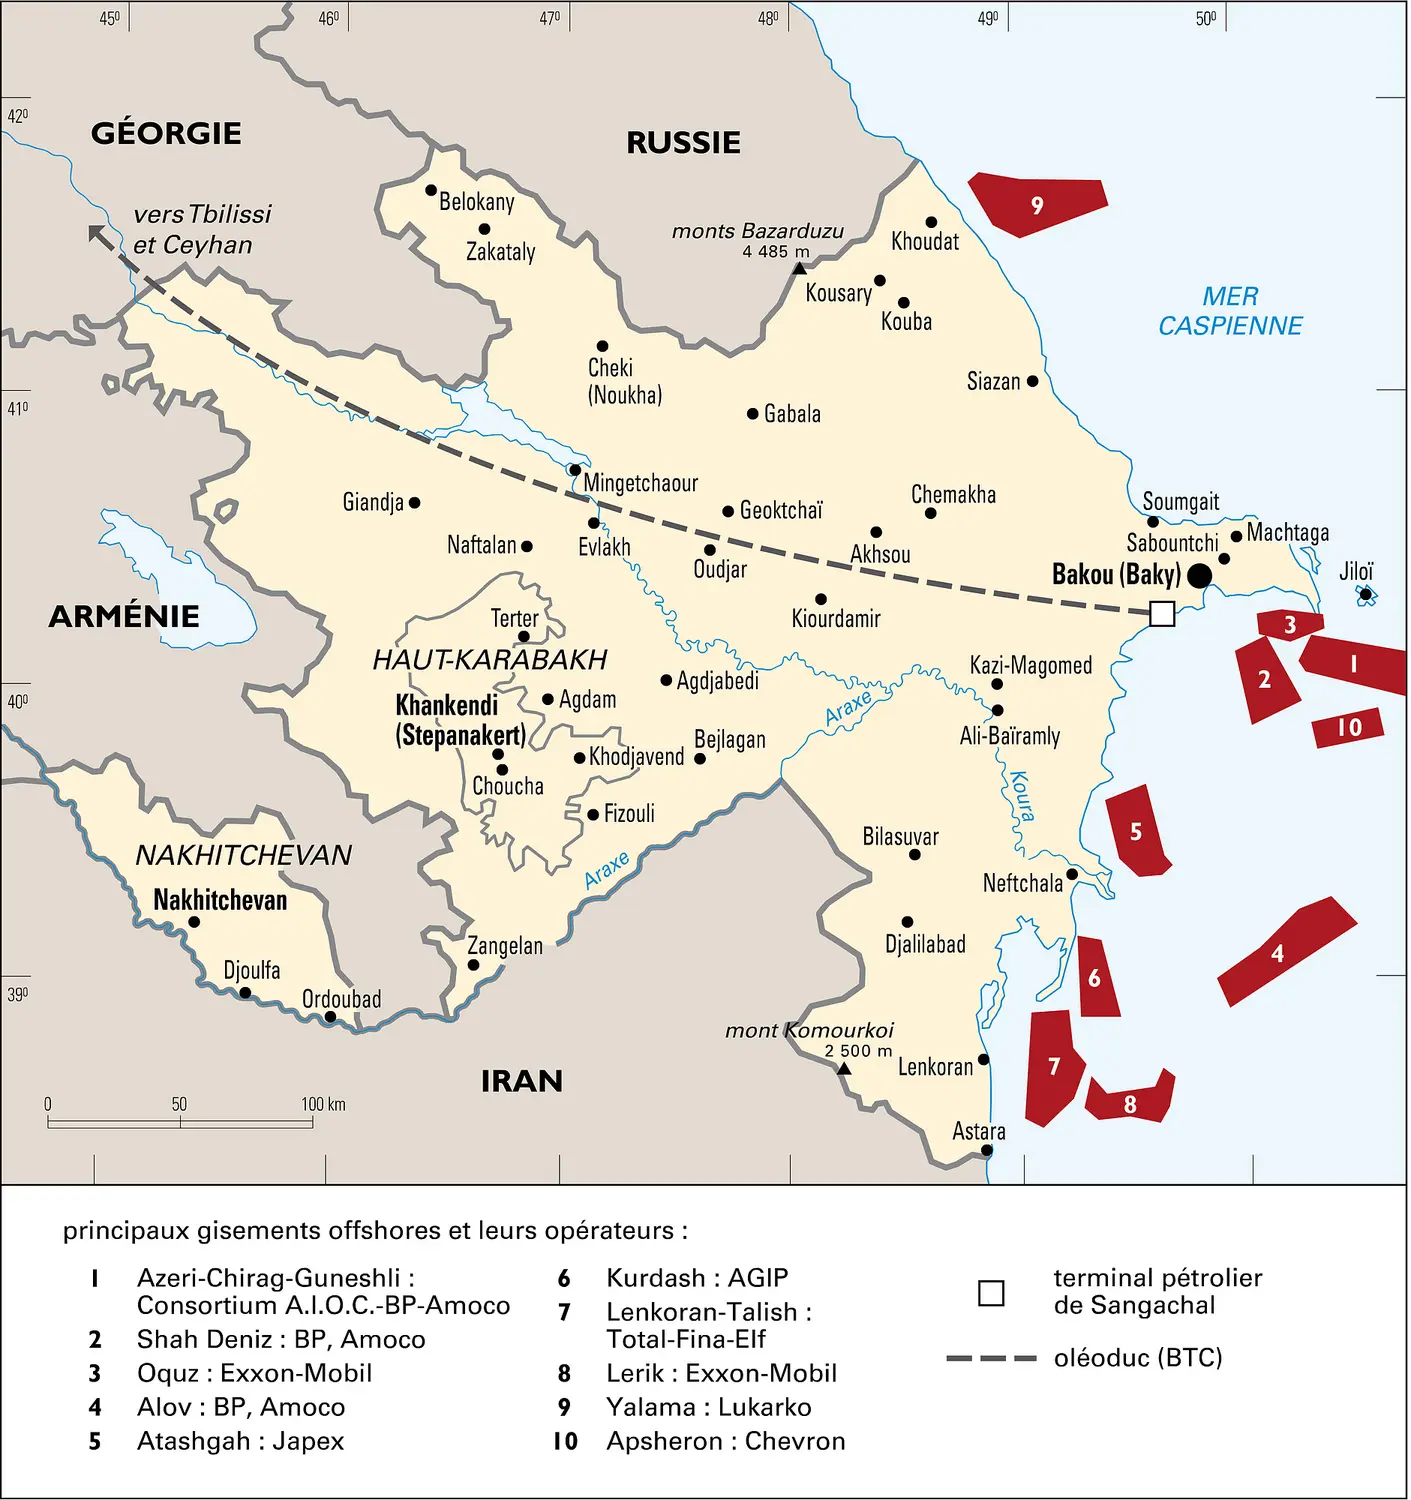 Azerbaïdjan : activité pétrolière